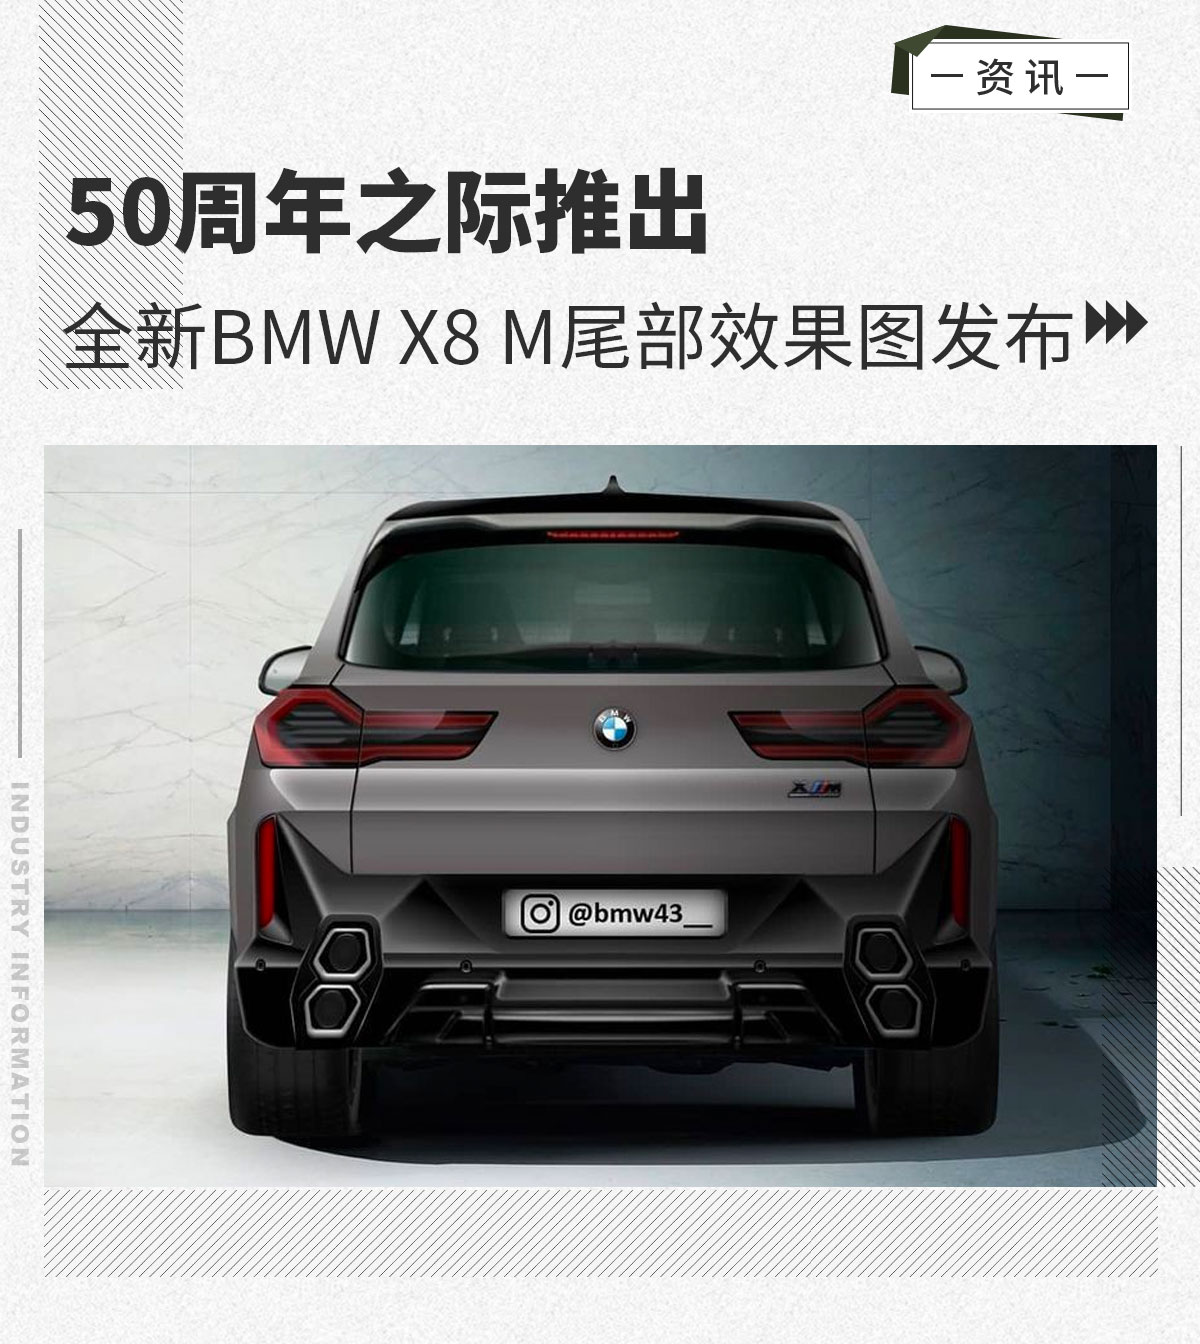 “特殊”日子推出 全新BMW X8 M尾部效果图发布